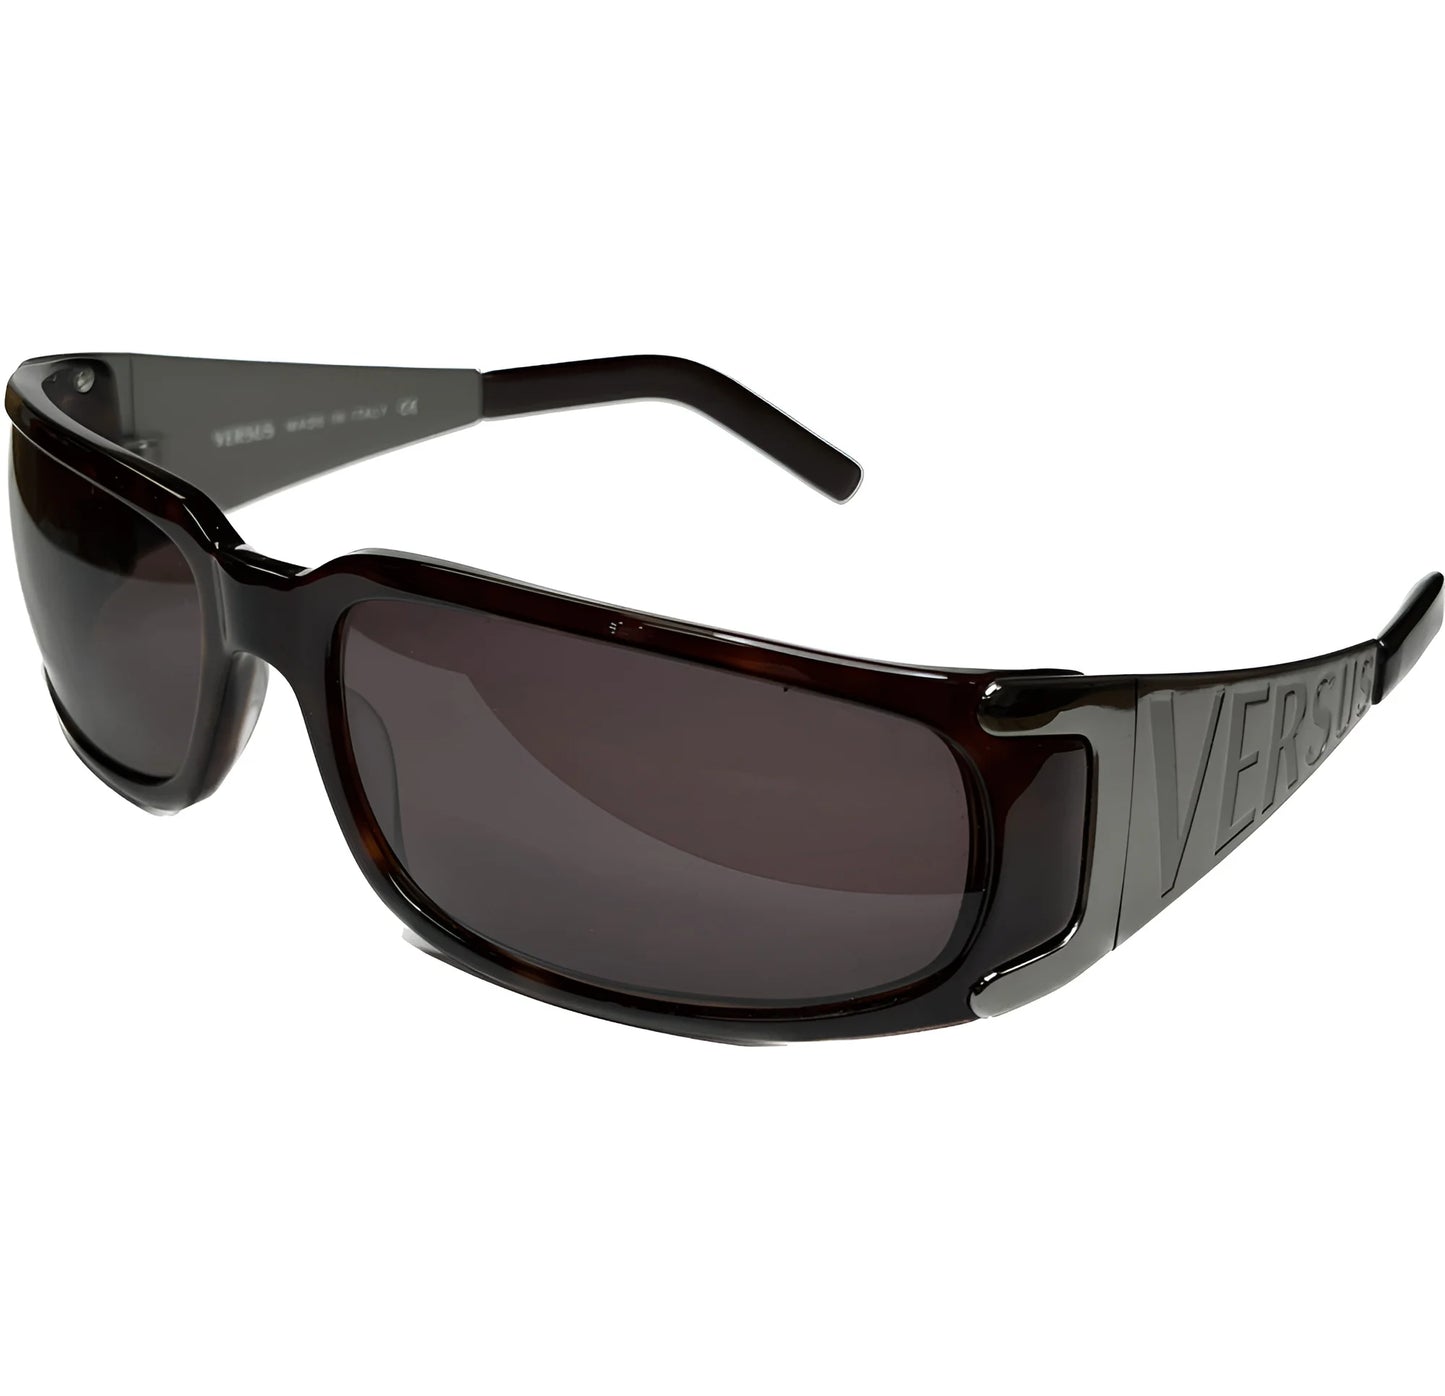 Versus VR6007 Sunglasses